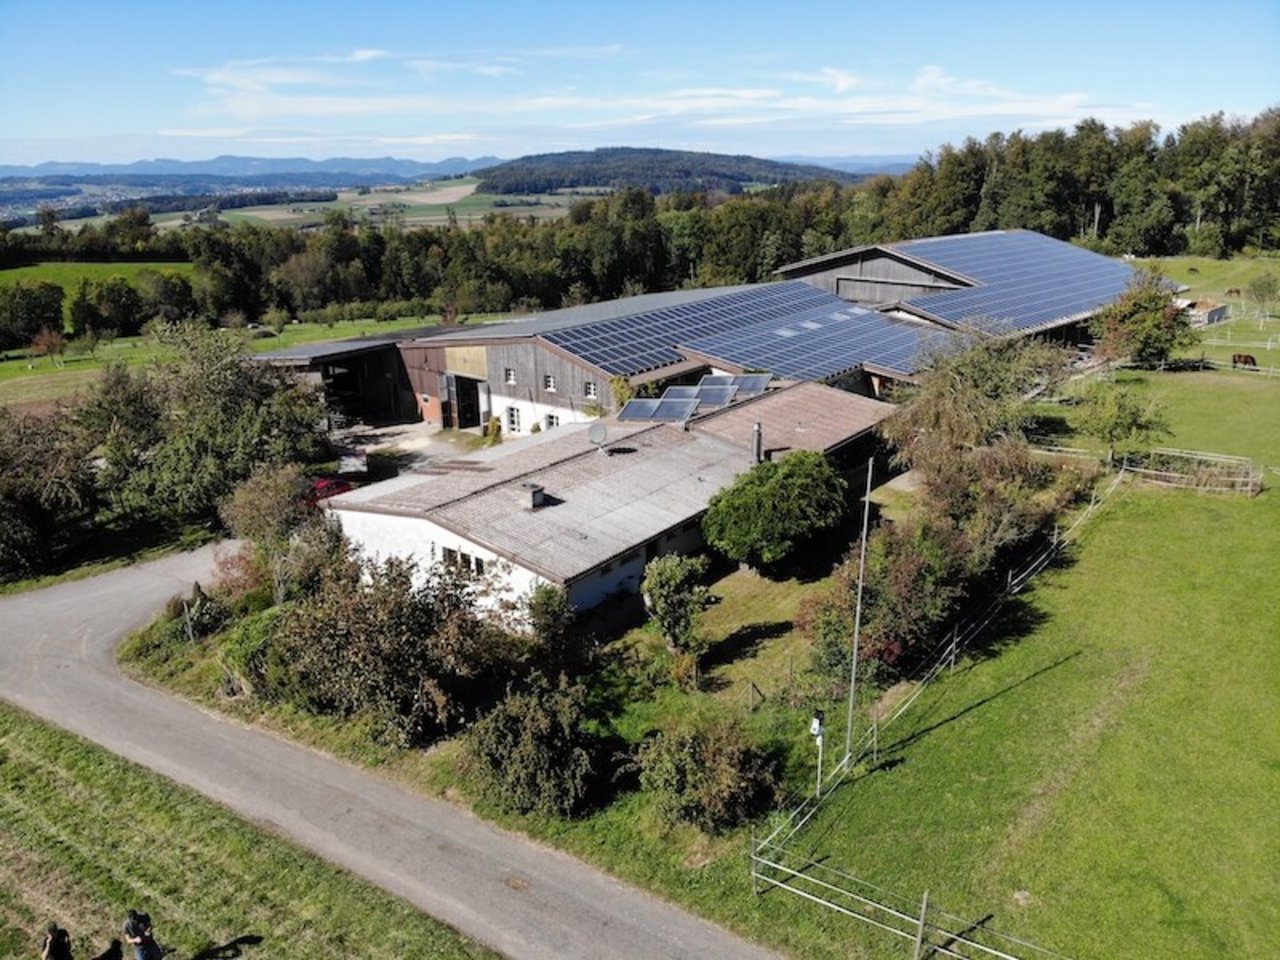 2600 m2 Solarpanels zieren das Dach vom Erushof und produzieren 400 '000 kW Strom pro Jahr. (Bild zVg)